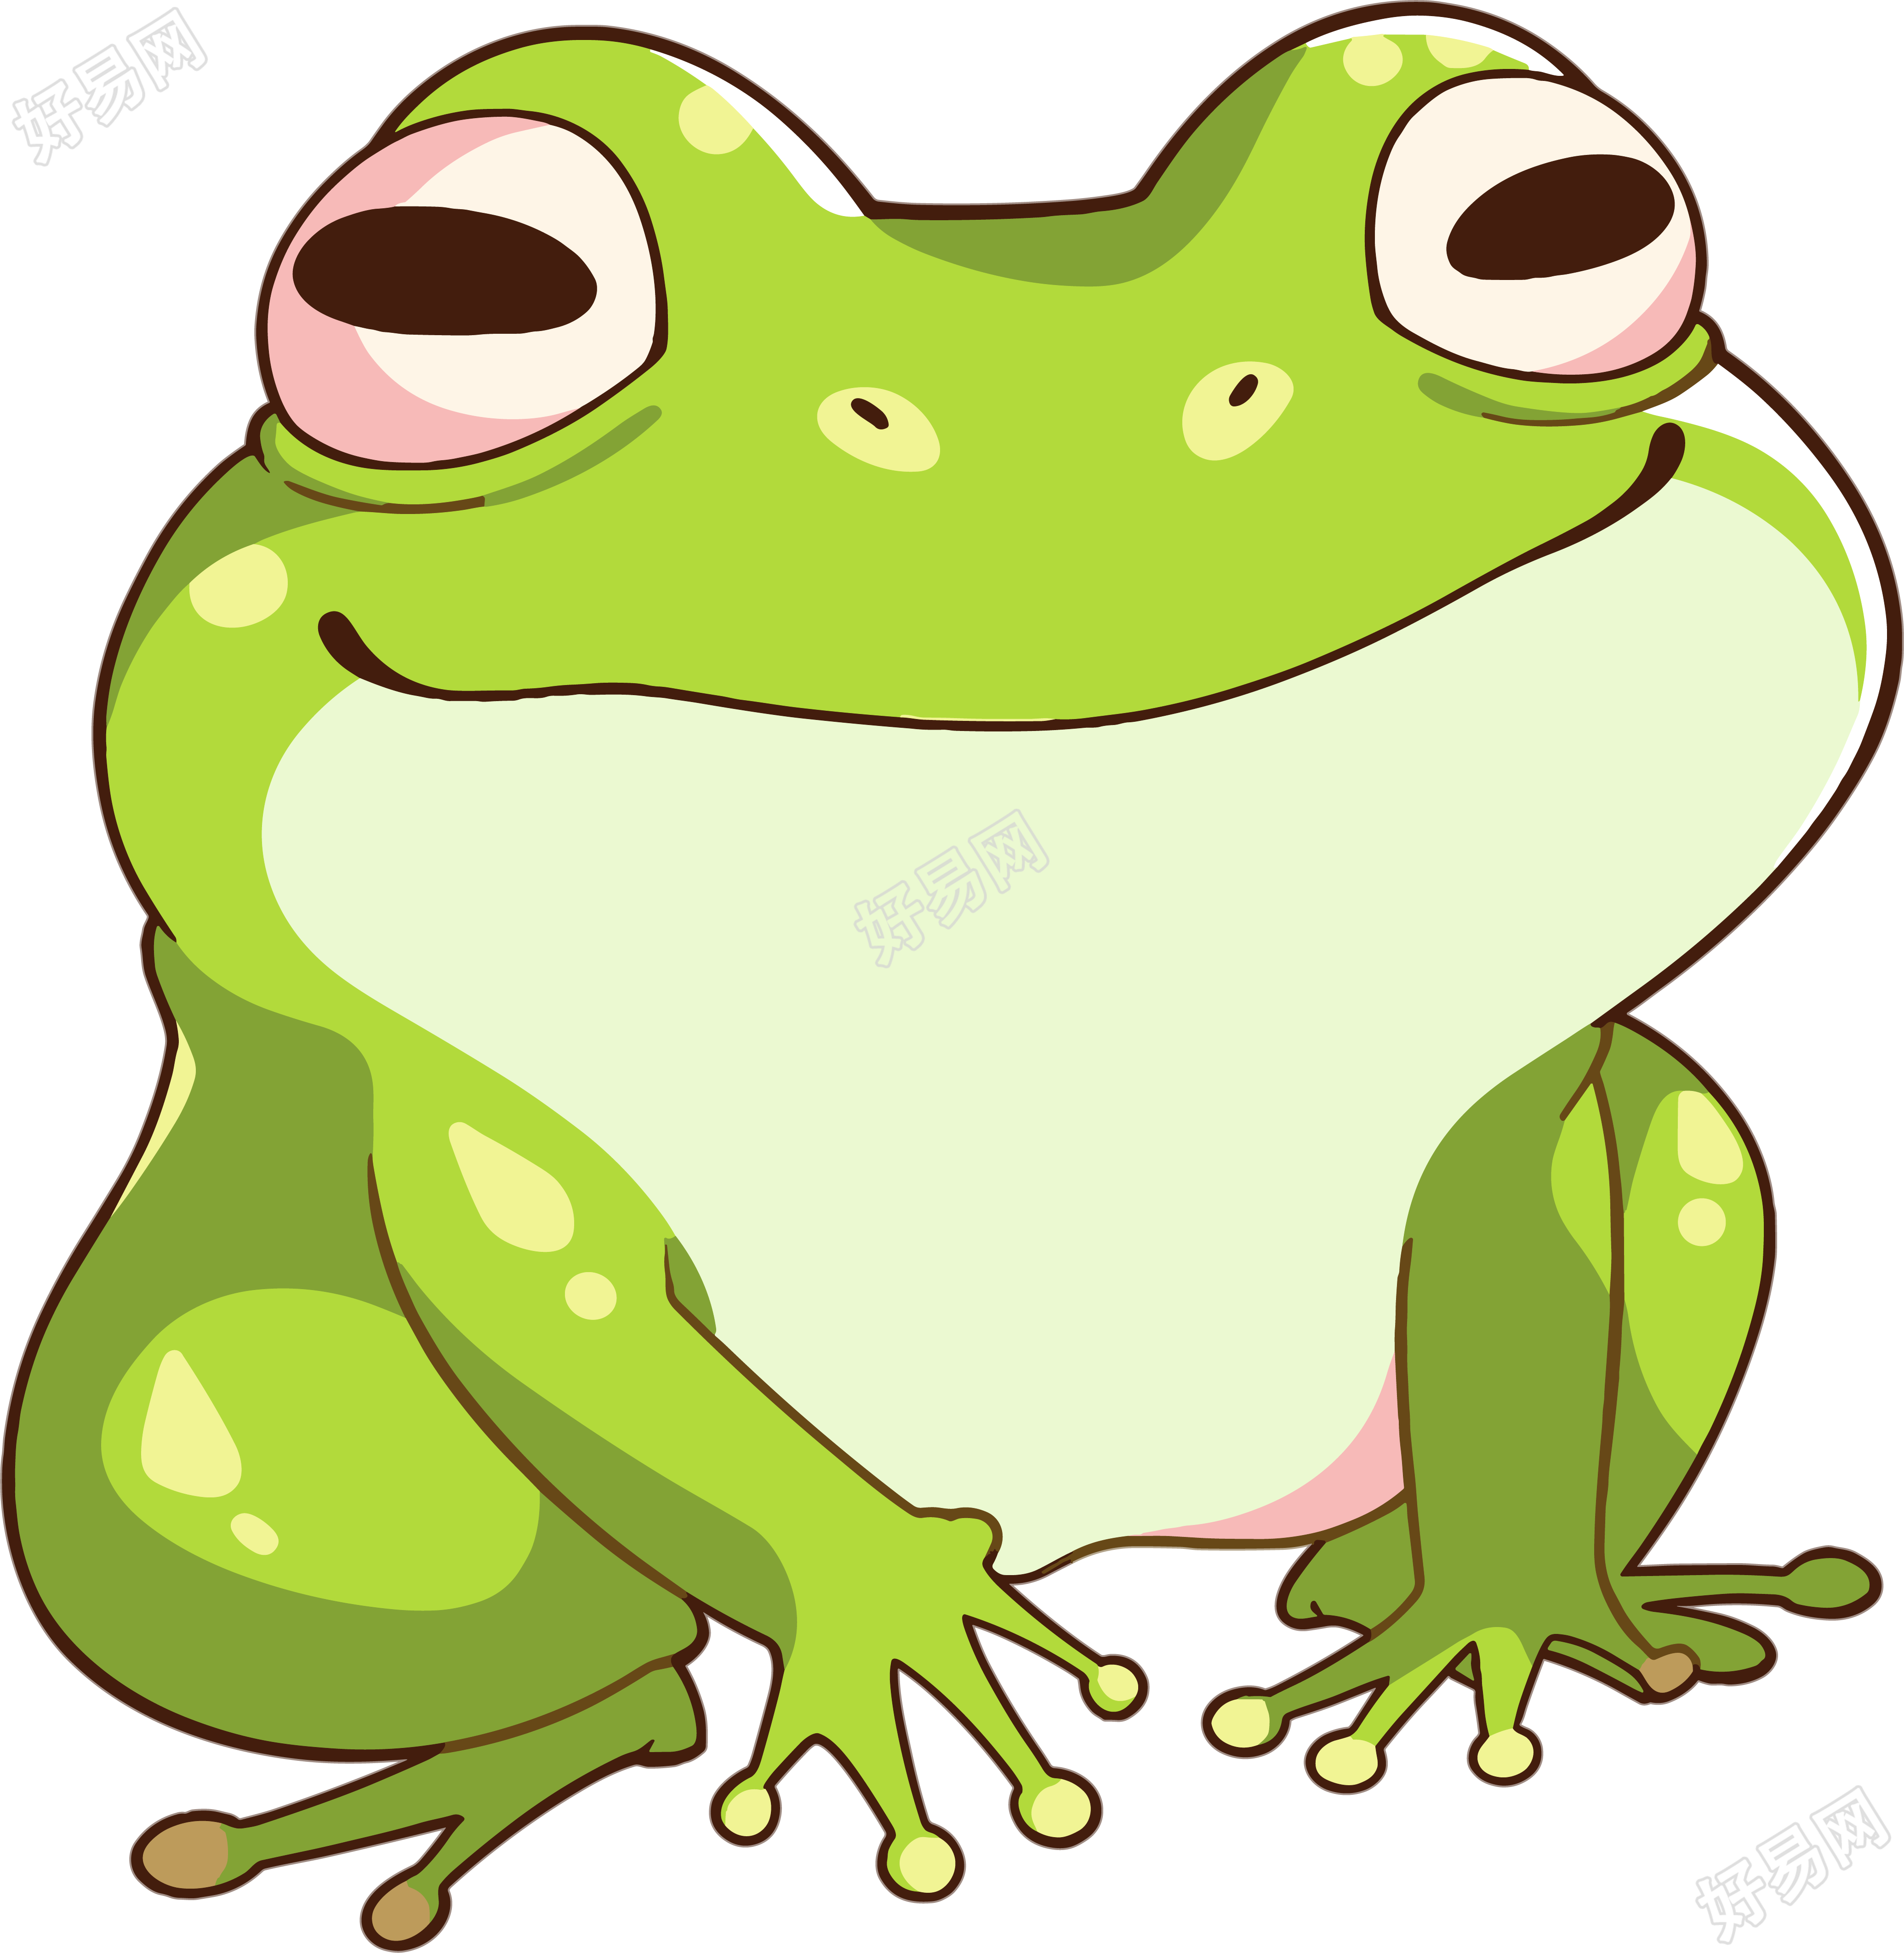 青蛙插画设计素材